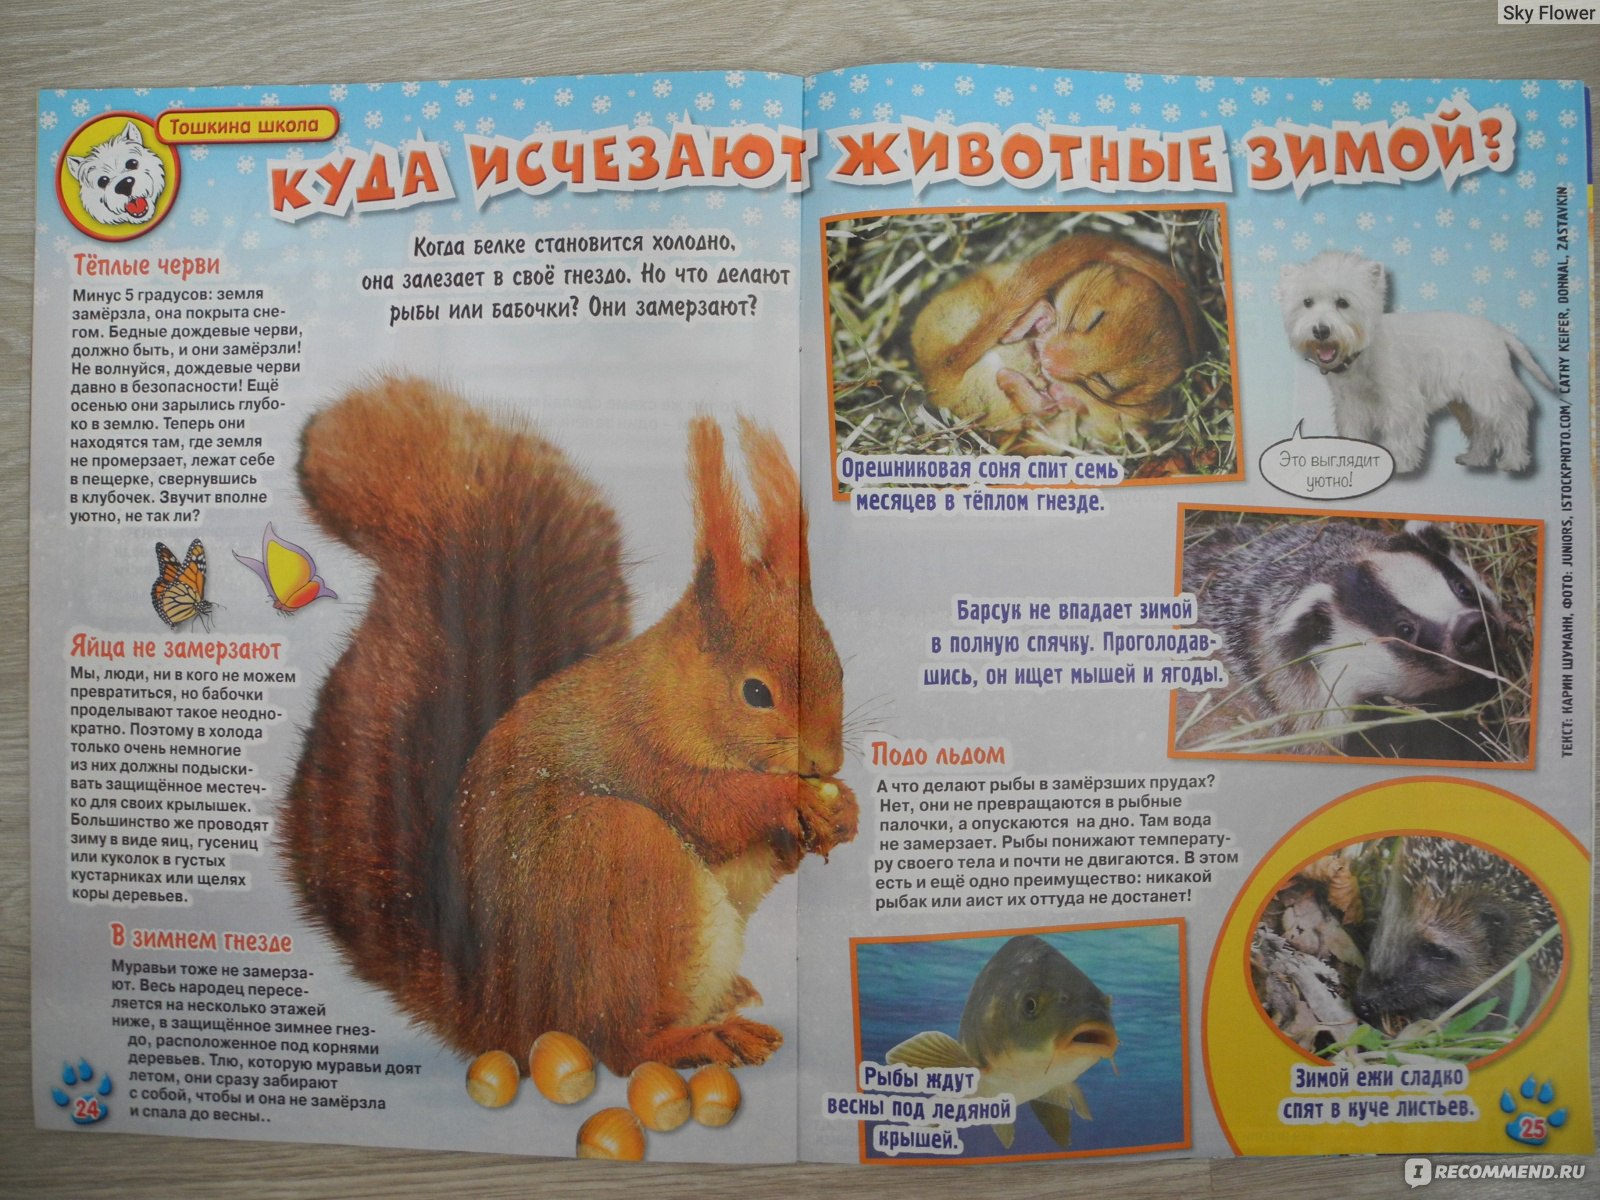 Журналы о природе и животных для детей